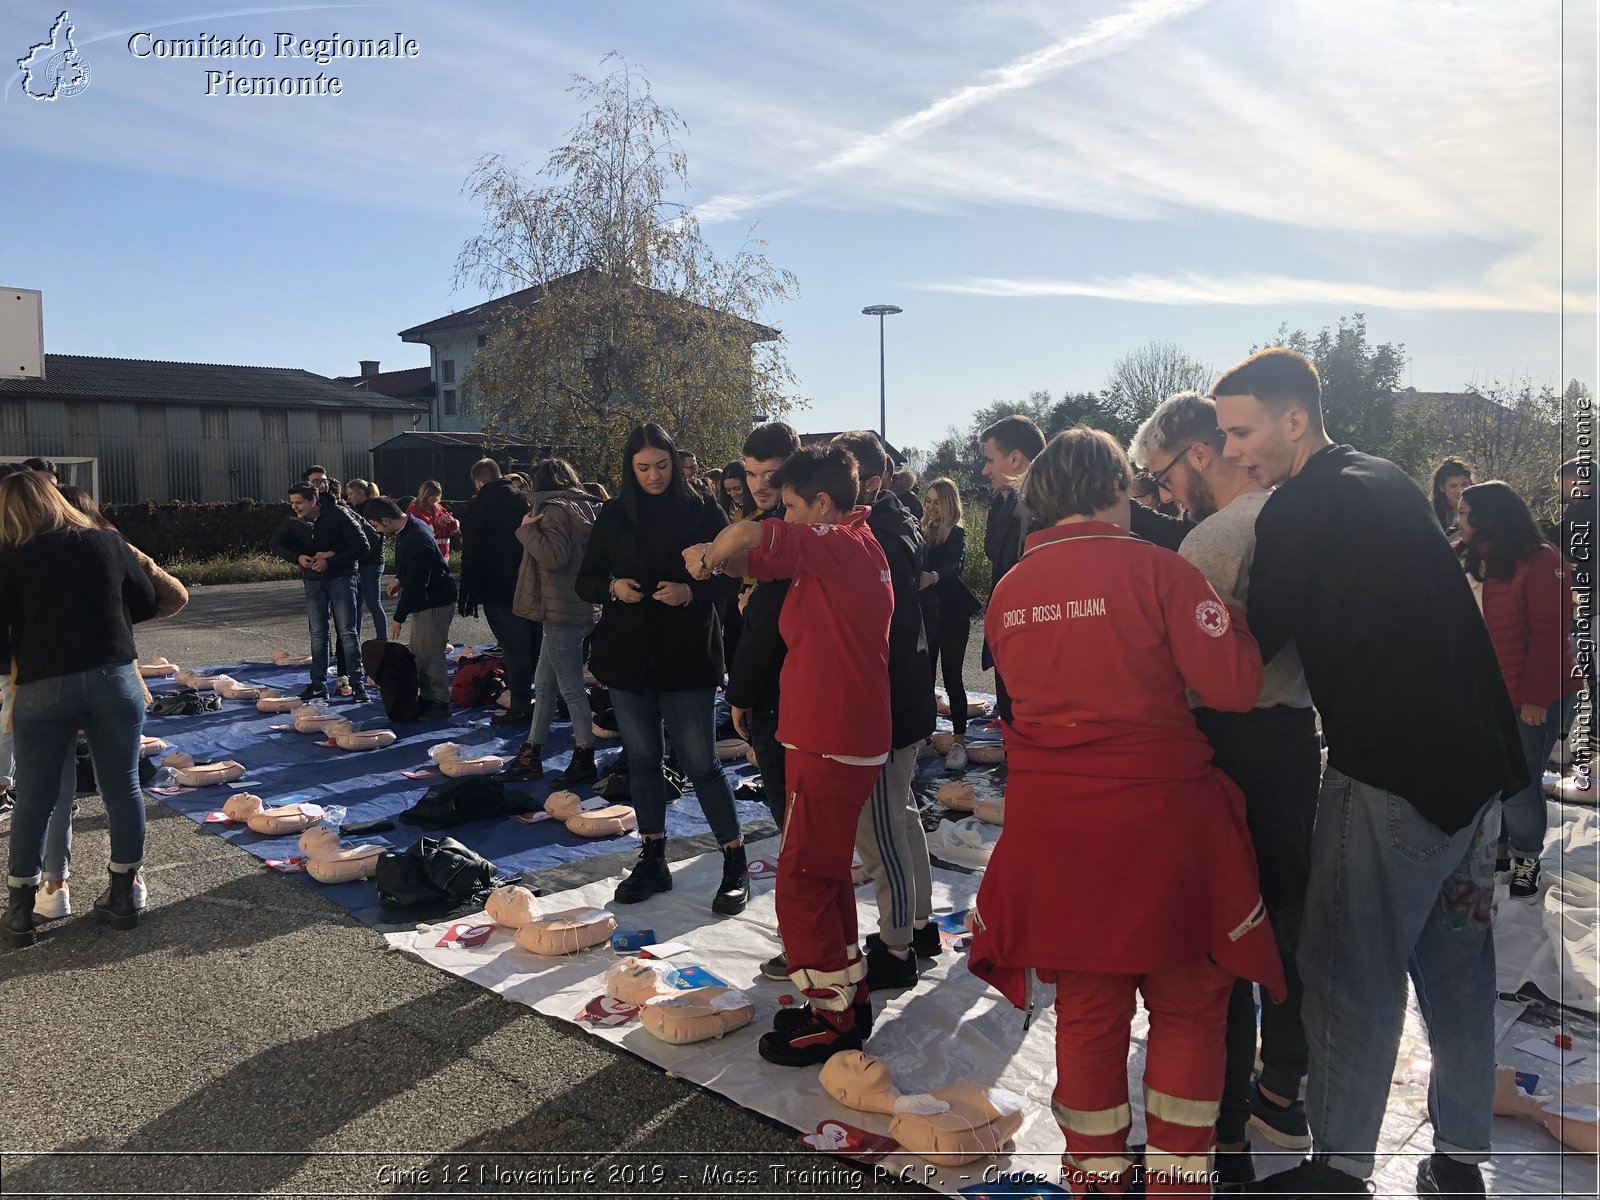 Ciri 12 Novembre 2019 - Mass Training R.C.P. - Croce Rossa Italiana